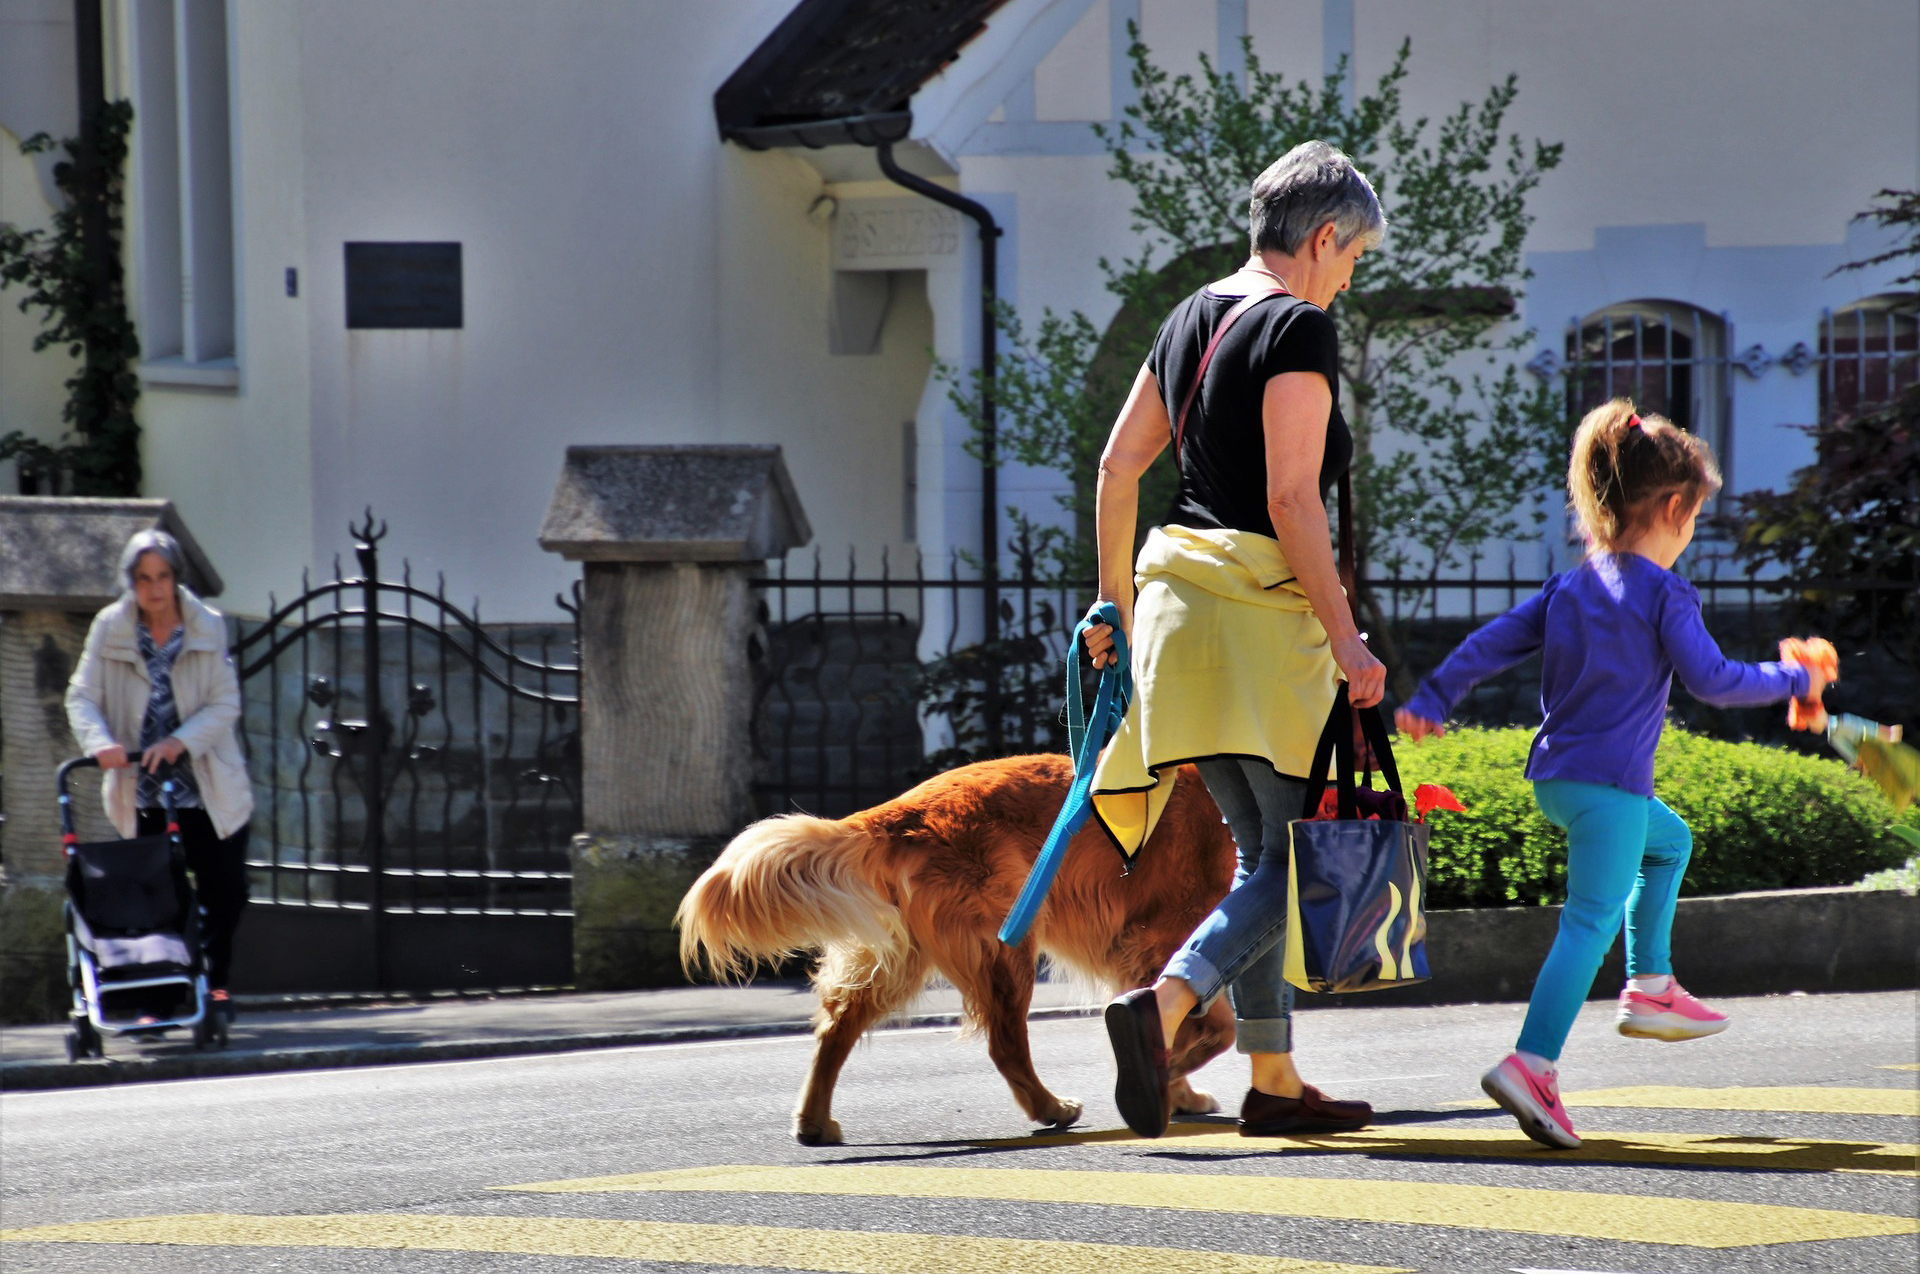 Eine Frau spaziert mit Hund und Kind an der Hand über den Fussgängerstreifen. Im Hintergrund befindet sich ein älteres, weisses Gebäude mit eingezäuntem Grundstück und davor eine Frau mit einem Einkaufswagen